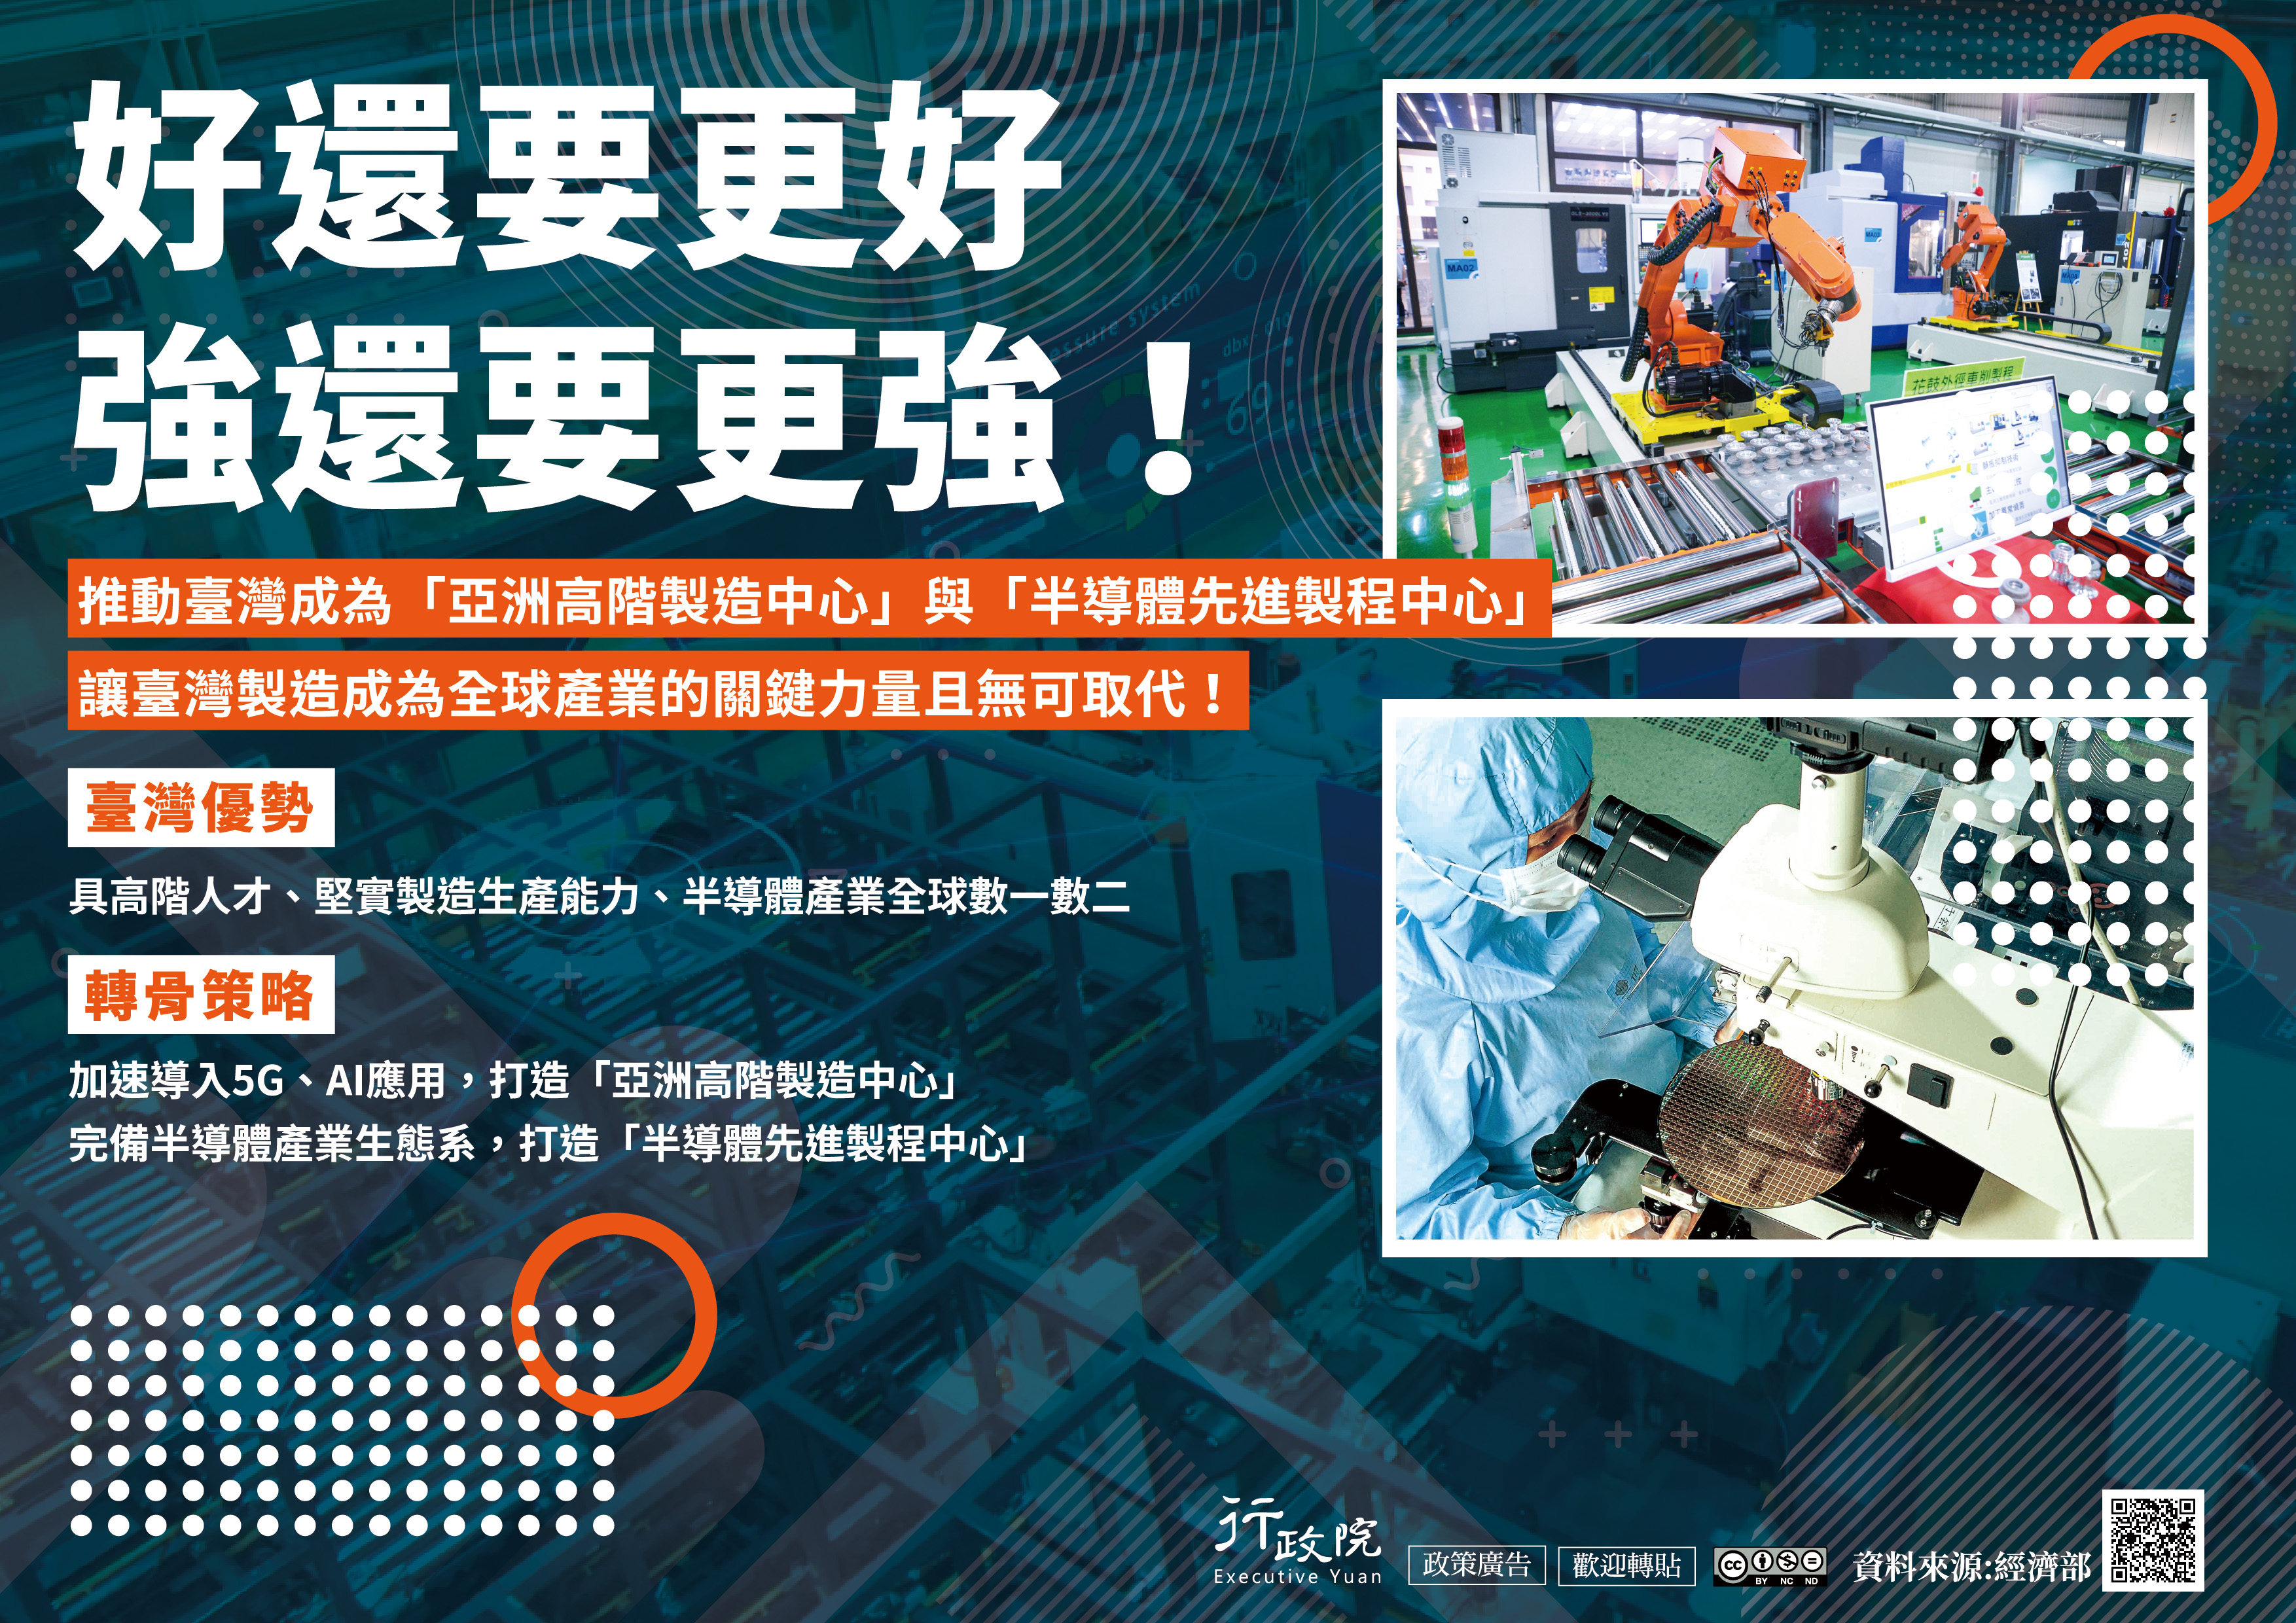 推動台灣成為「亞洲高階製造中心」與「半導體先進製程中心」